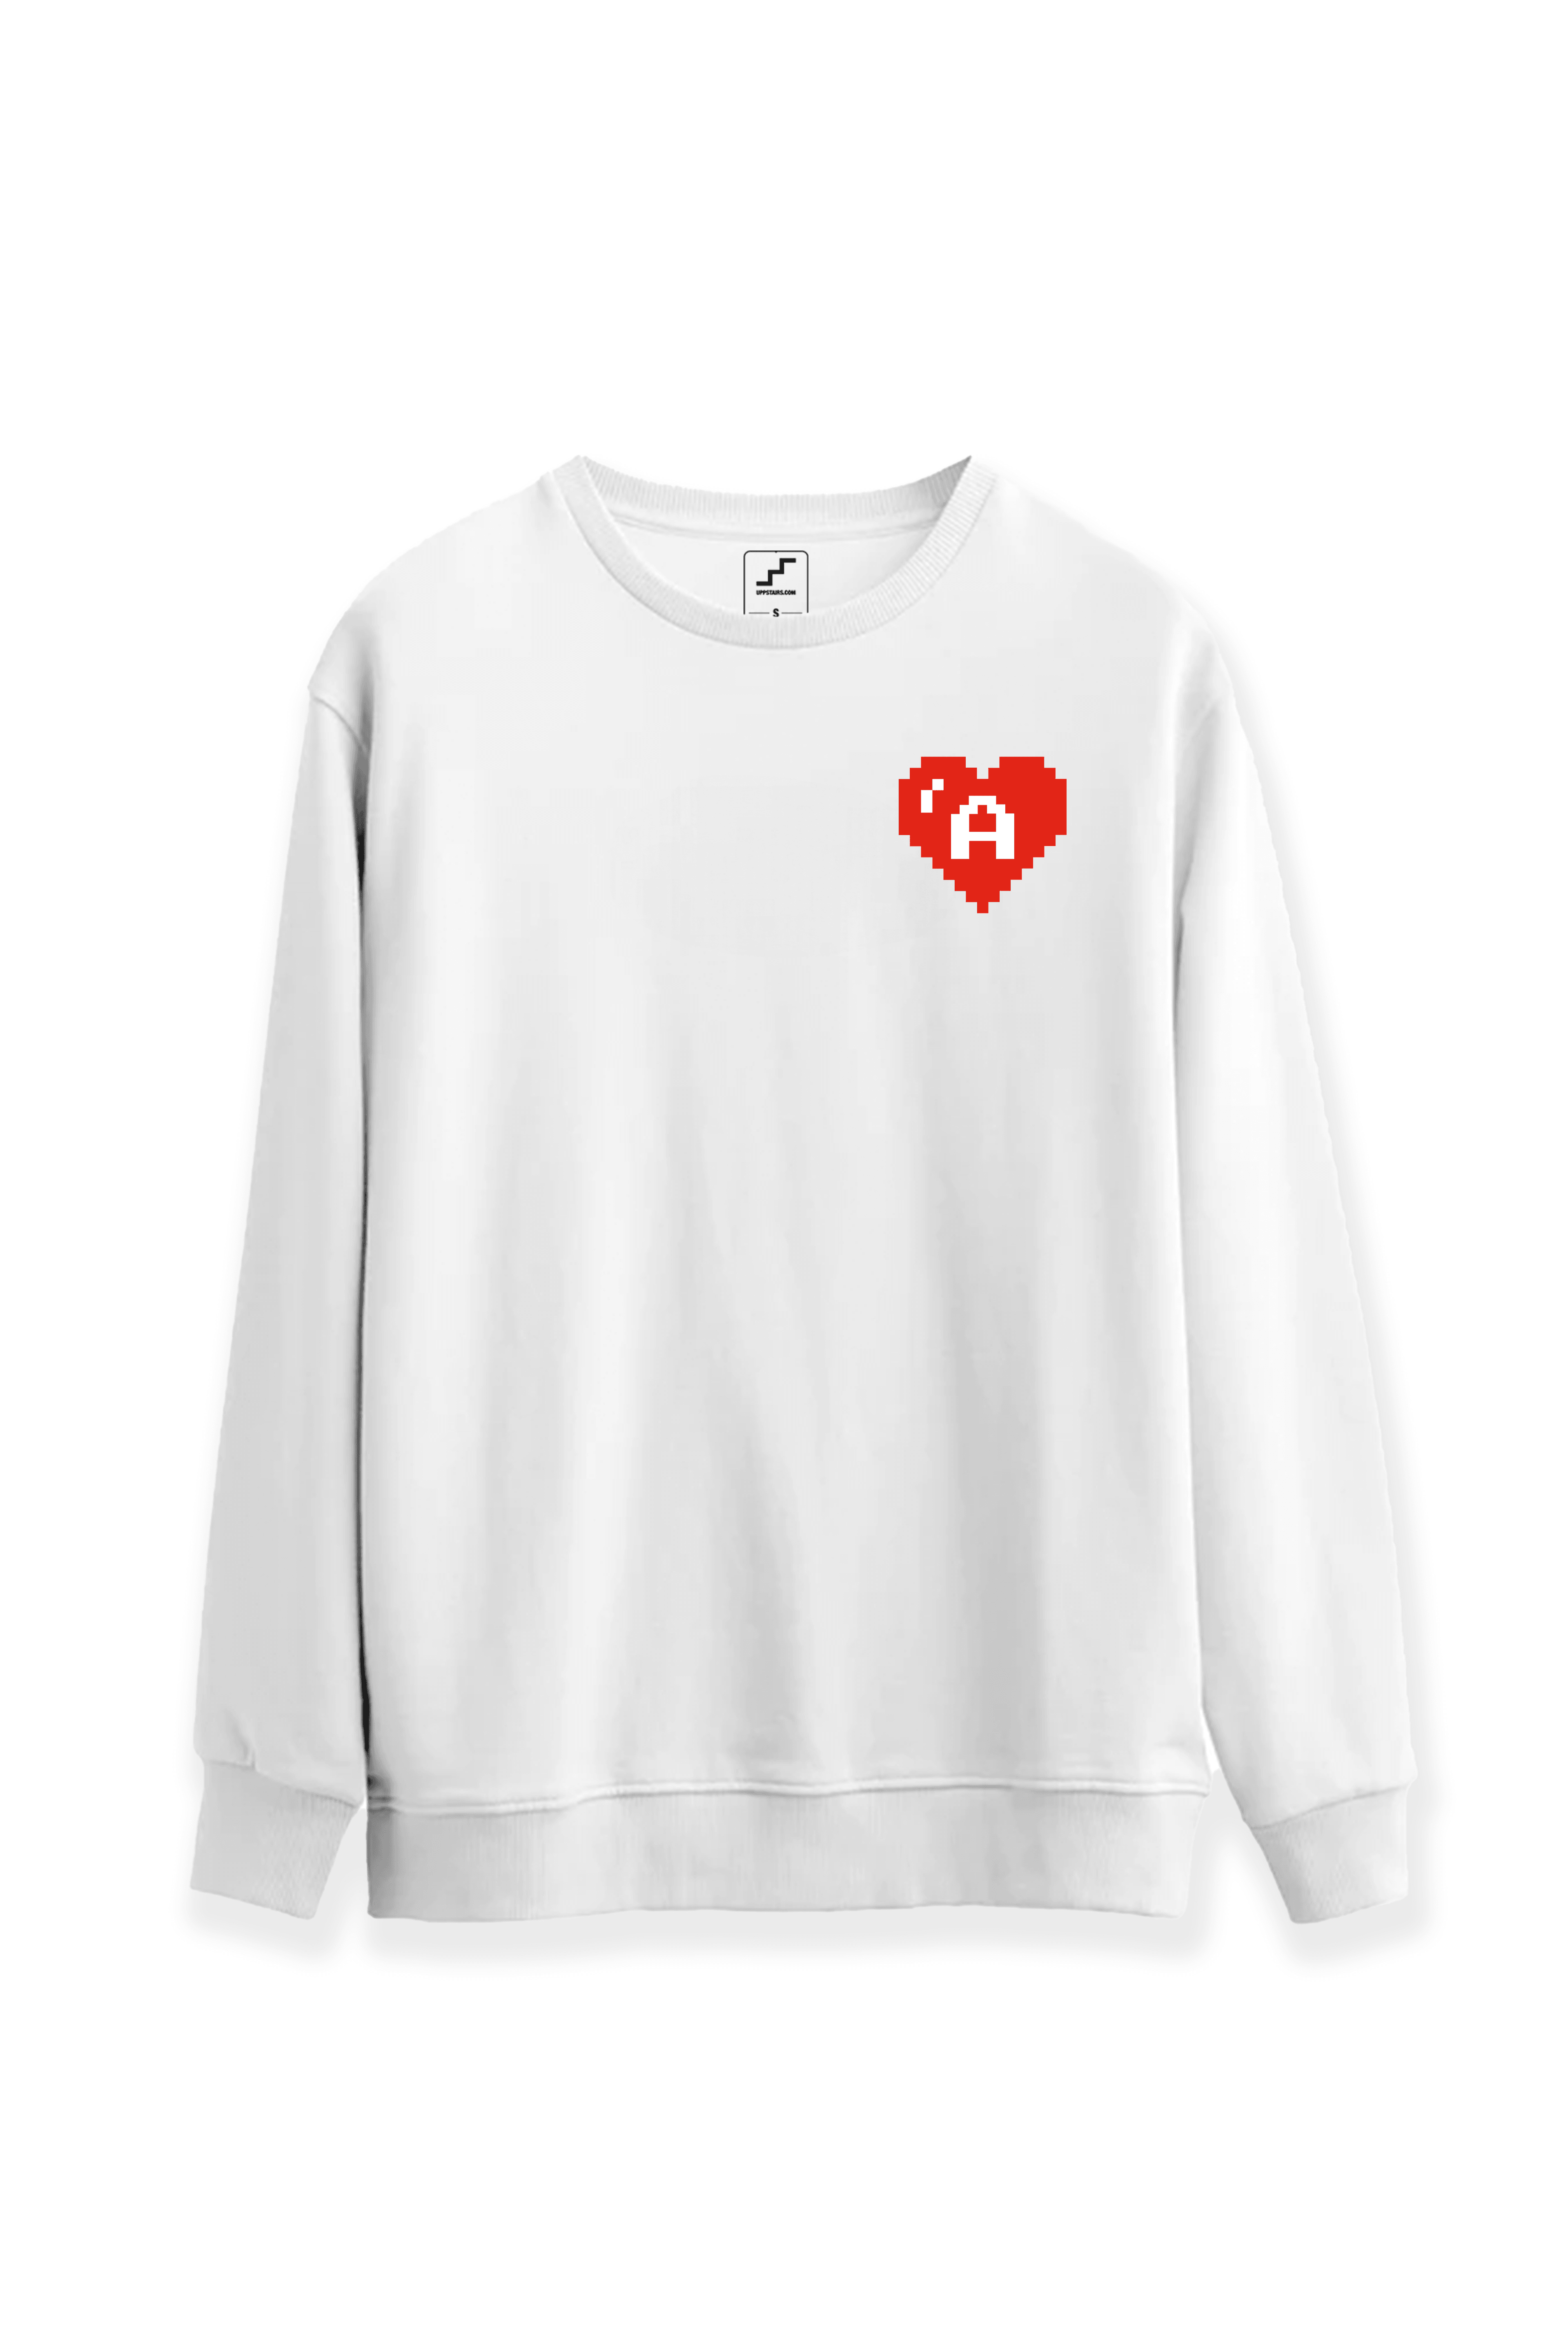 Aşkın Piksel Kalbi - Sevgiler Günü Özel Sweatshirt ❤️ - Beyaz